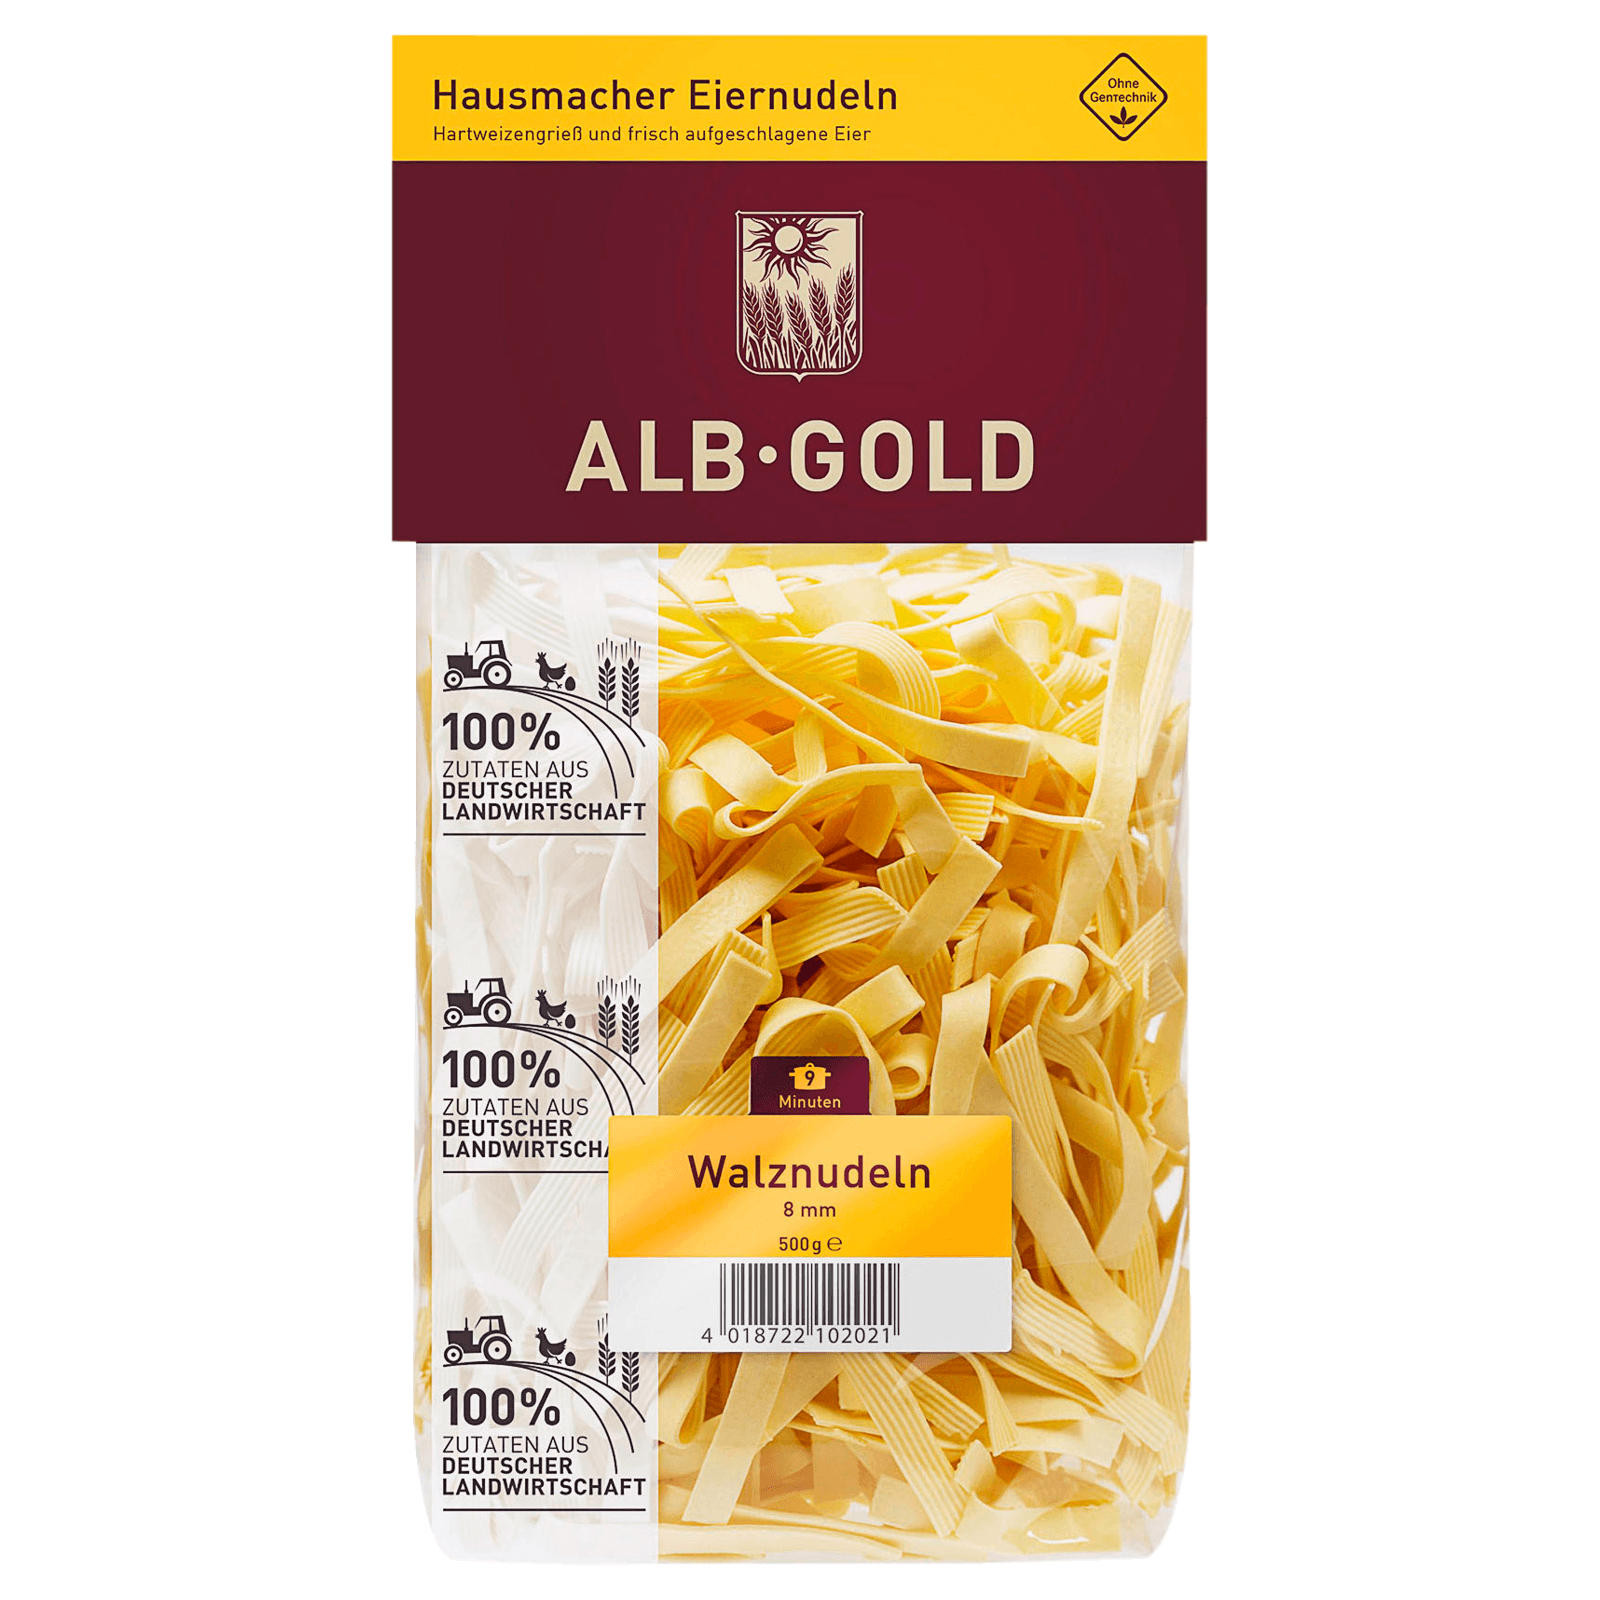 Alb-Gold Walznudeln 8mm 500g  für 2.99 EUR